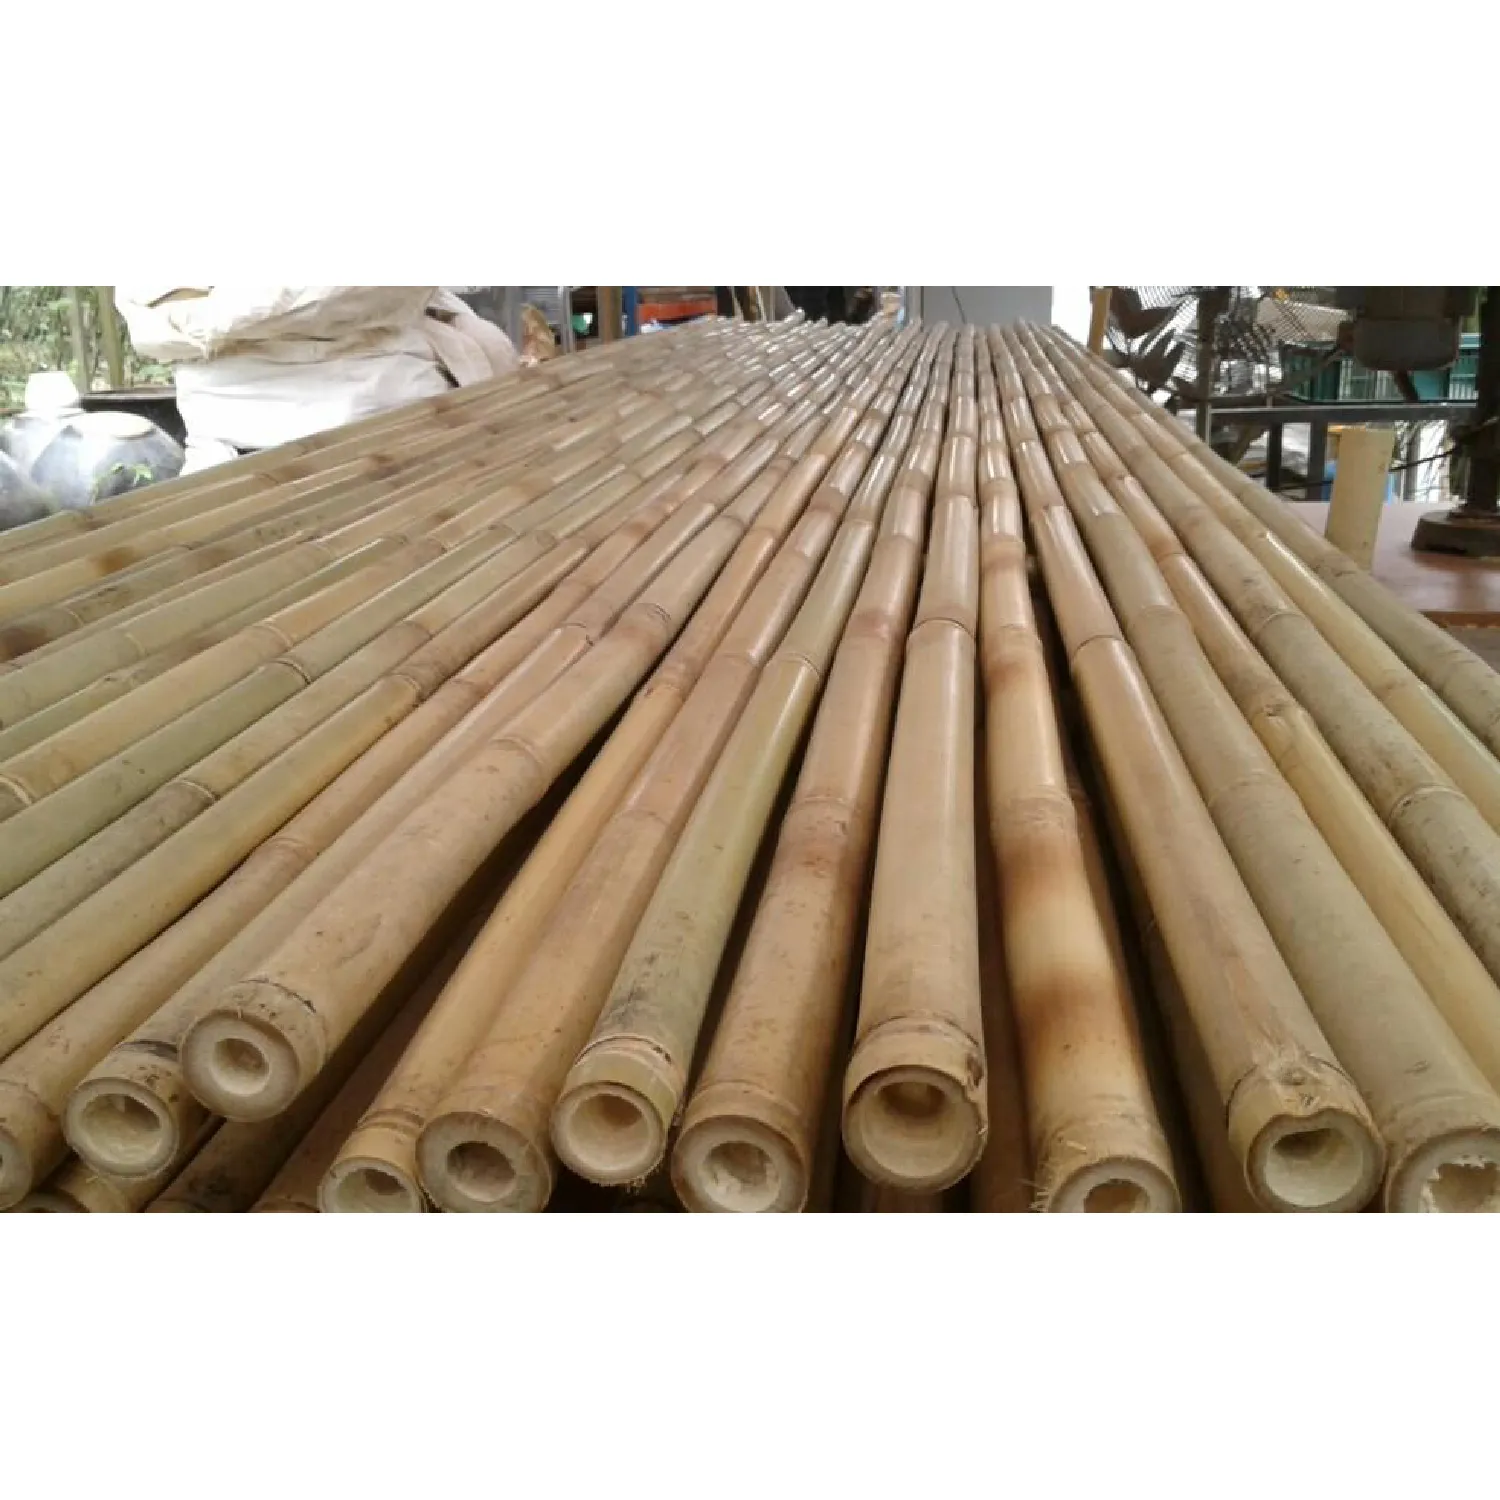 Yüksek kaliteli Vietnam bambu direkleri sopa tropikal doğal bambu inşaat için tedavi sıcak satış